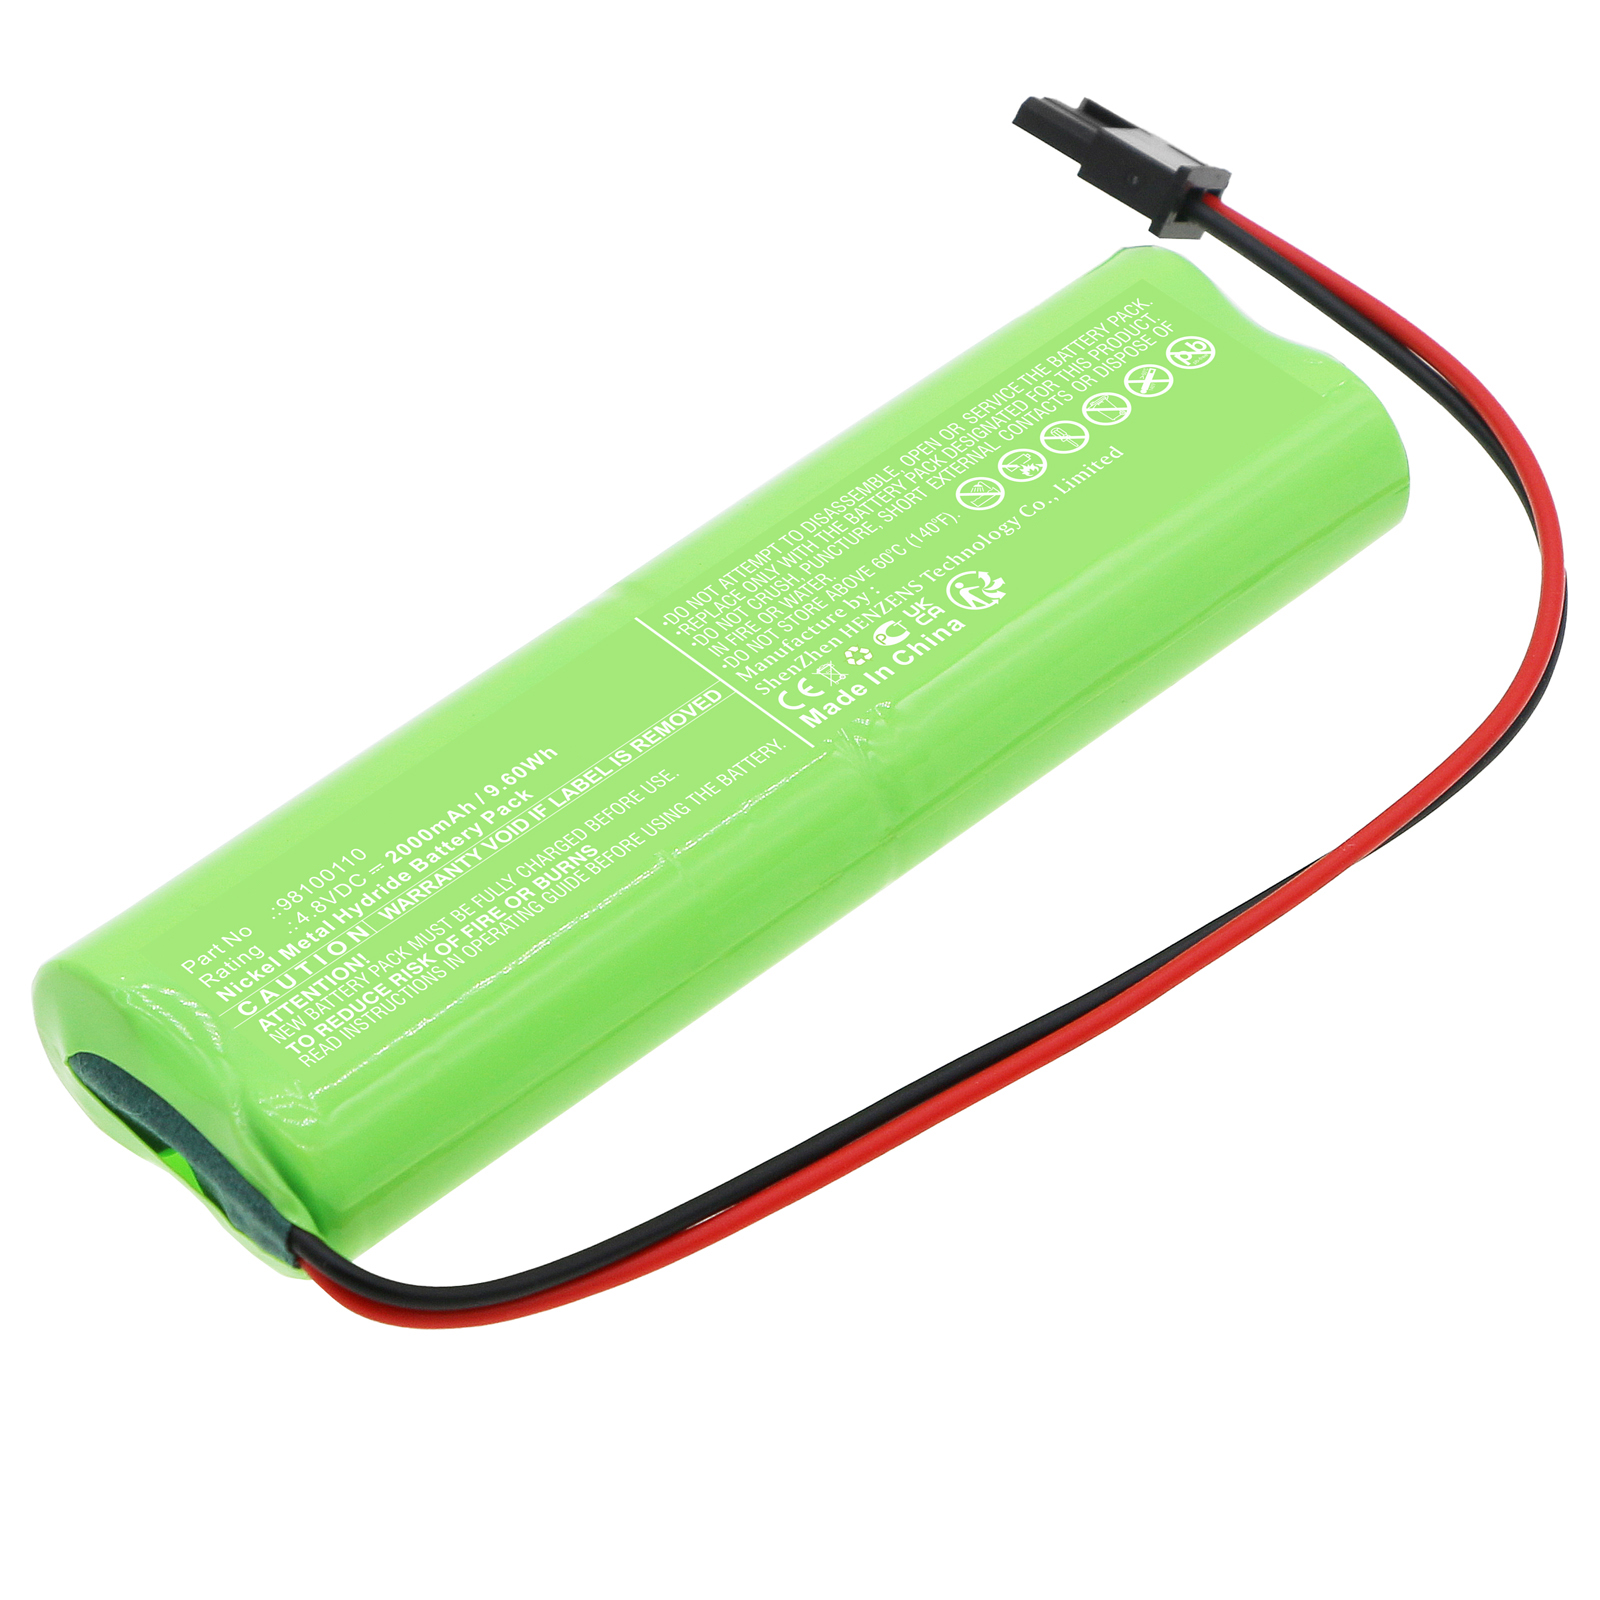 Synergy Digital Emergency Lighting Battery, Compatible with Inotec 98100110 Emergency Lighting Battery (Ni-MH, 4.8V, 2000mAh)